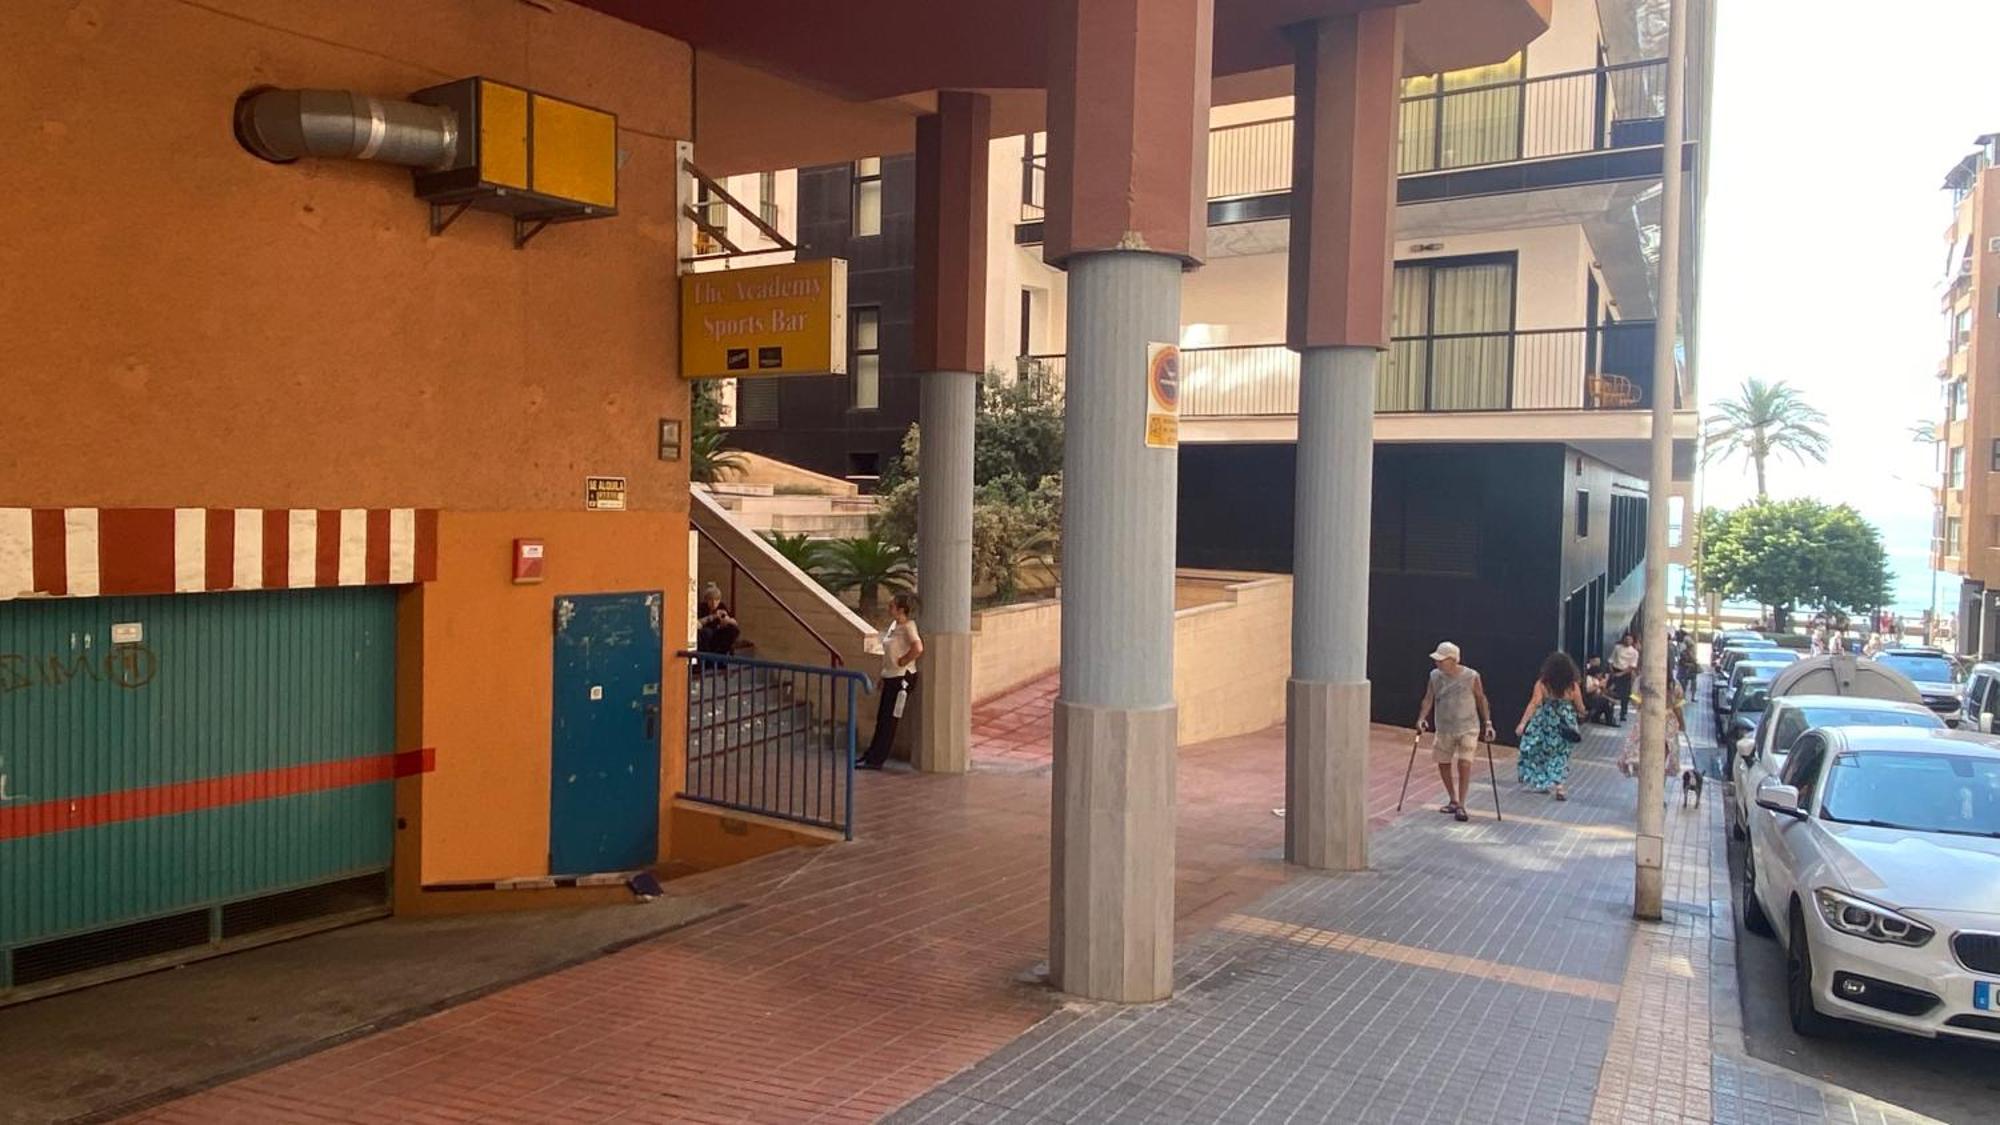 Solymar Poniente Apartamento Recien Reformado A 3 Min De Playa Poniente Y Del Centro Parking Opcional Apartman Benidorm Kültér fotó